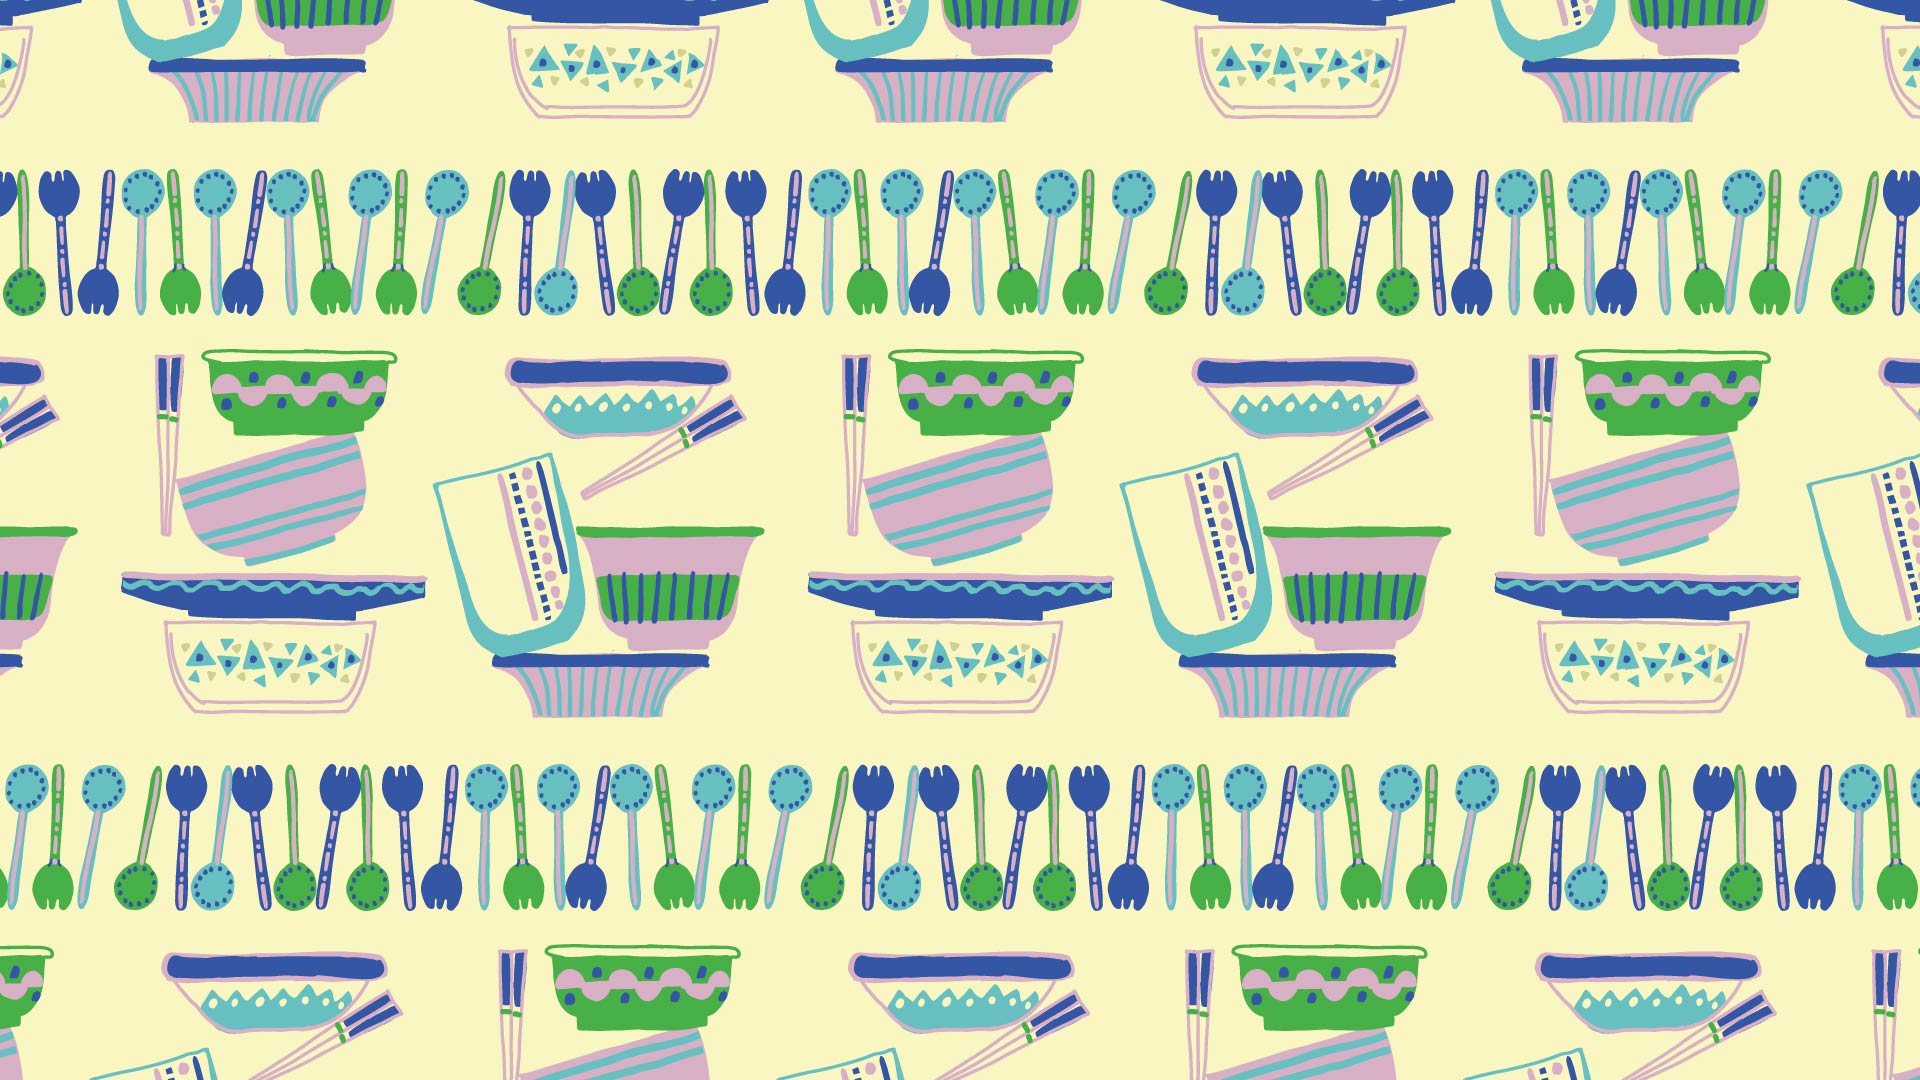 黄色の背景に緑や青や紫のカトラリーと食器のパターン